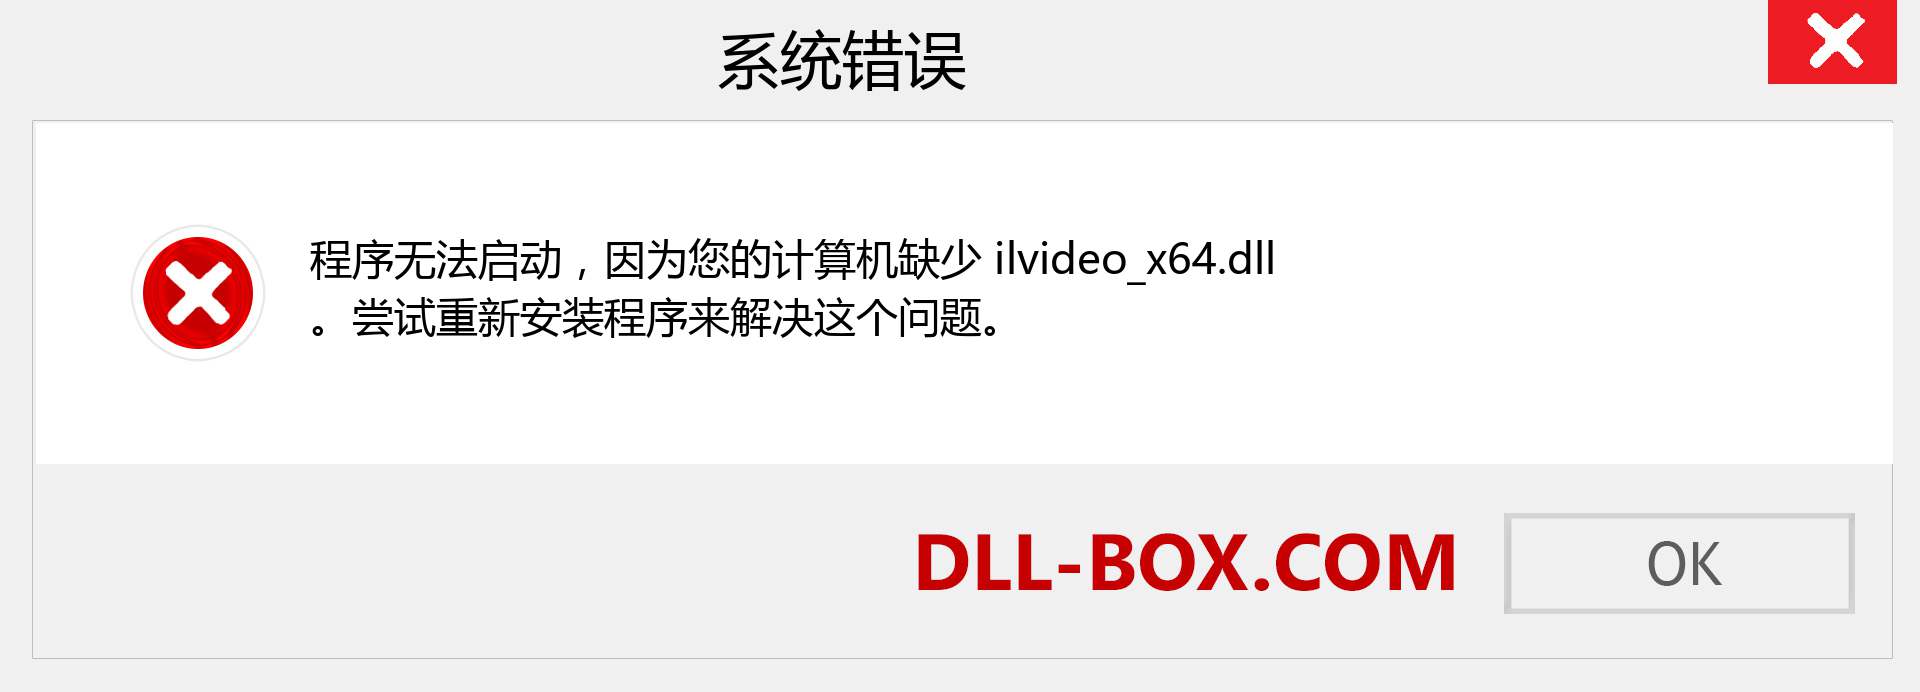 ilvideo_x64.dll 文件丢失？。 适用于 Windows 7、8、10 的下载 - 修复 Windows、照片、图像上的 ilvideo_x64 dll 丢失错误